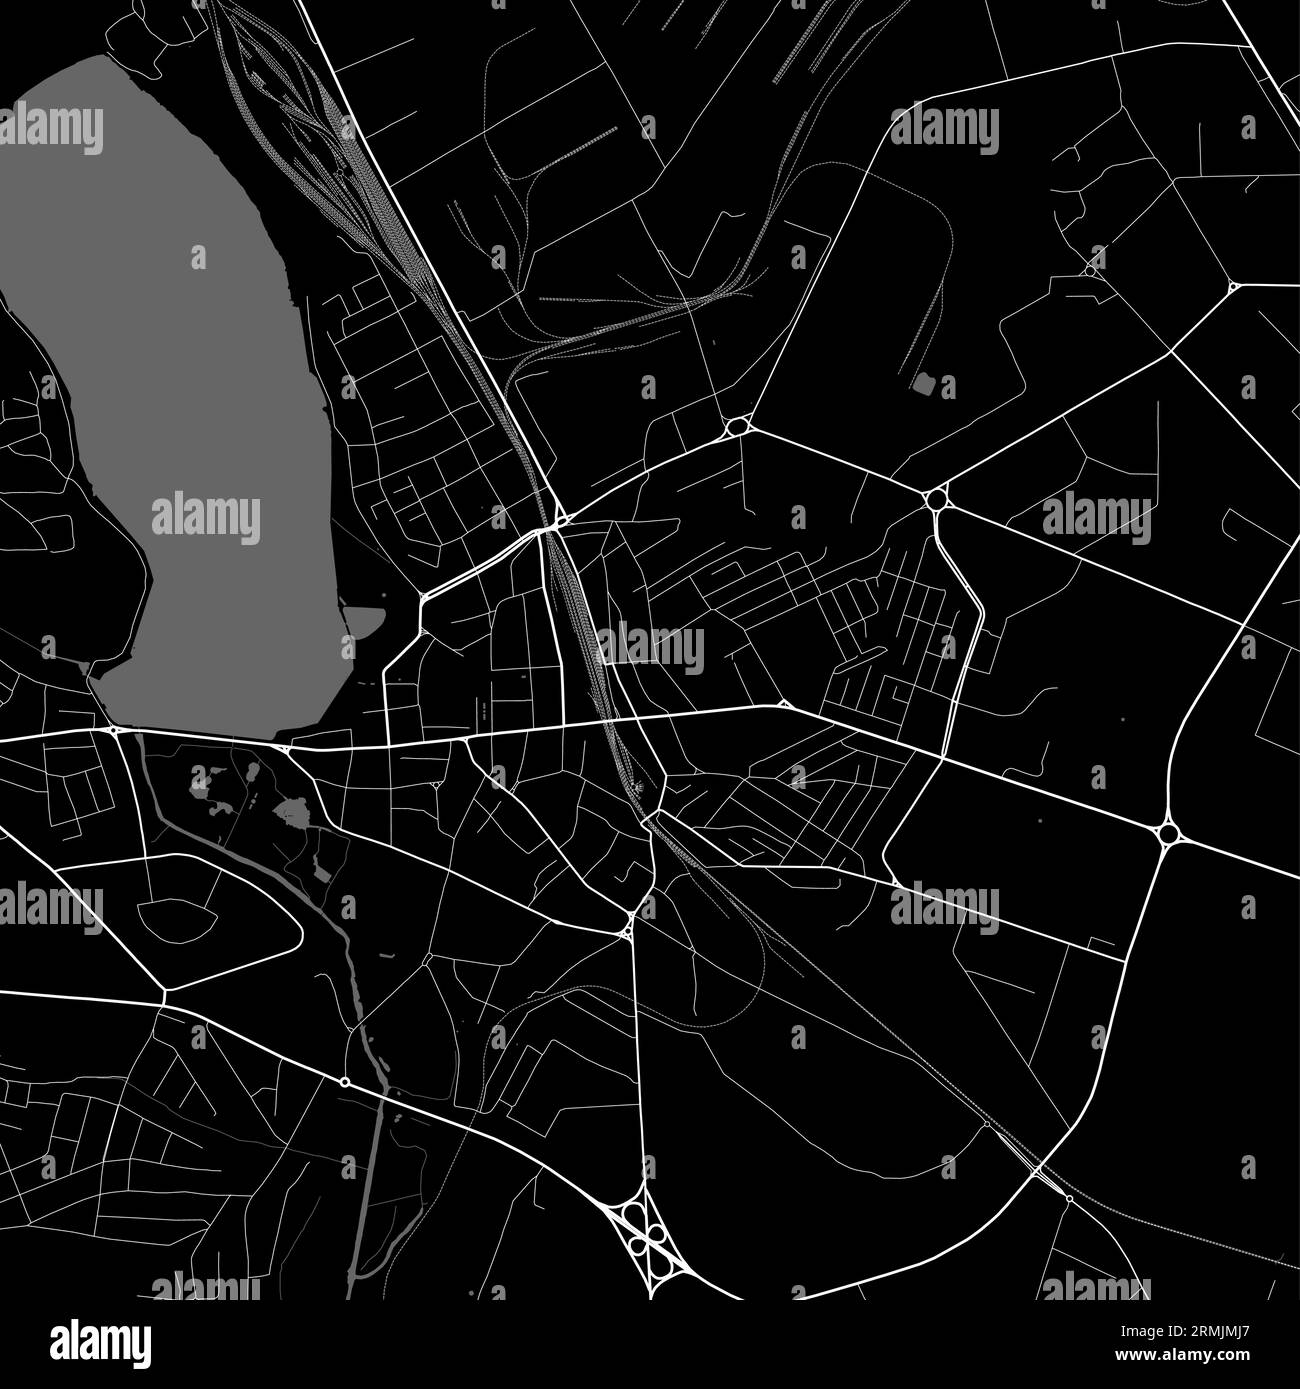 Carte de la ville de Ternopil, centre de l'oblast de l'Ukraine. Carte administrative municipale en noir et blanc avec rivières et routes, parcs et chemins de fer. Vecteur illus Illustration de Vecteur